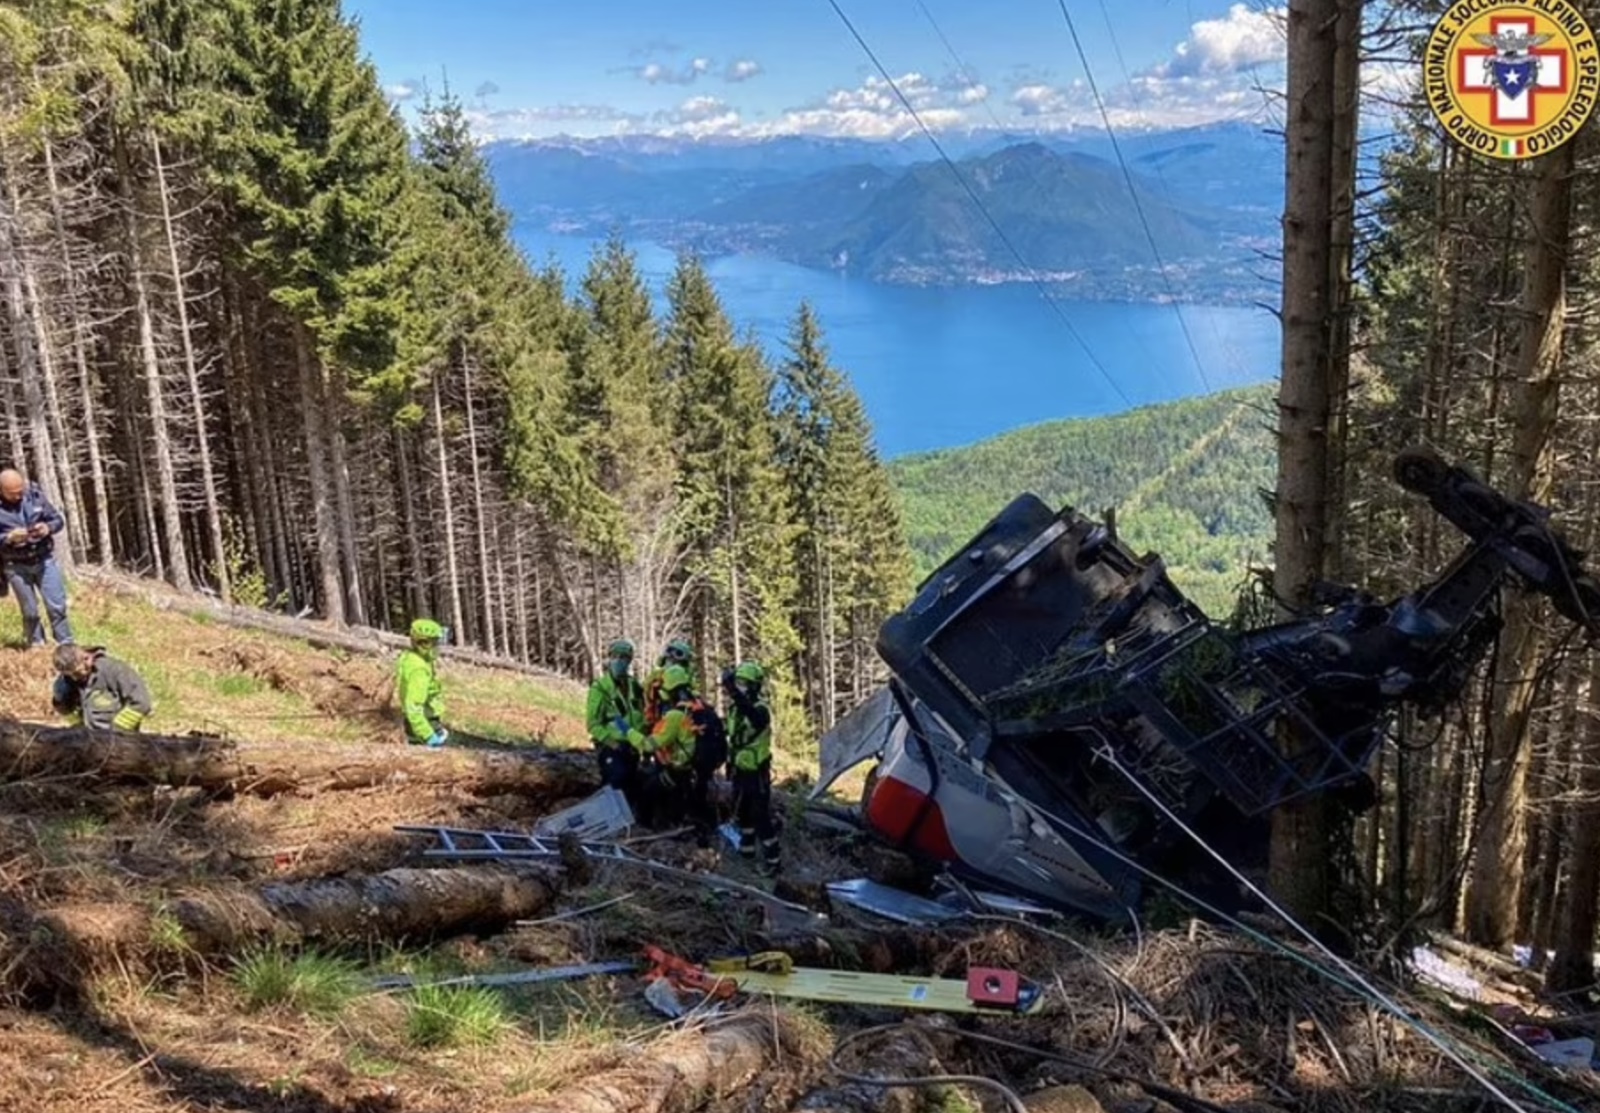 Ít nhất 14 người thiệt mạng và 1 em nhỏ bị thương nặng trong vụ tai nạn kinh hoàng ở vùng núi phía bắc Italy ngày 23/5/2021. Ảnh: ANSA